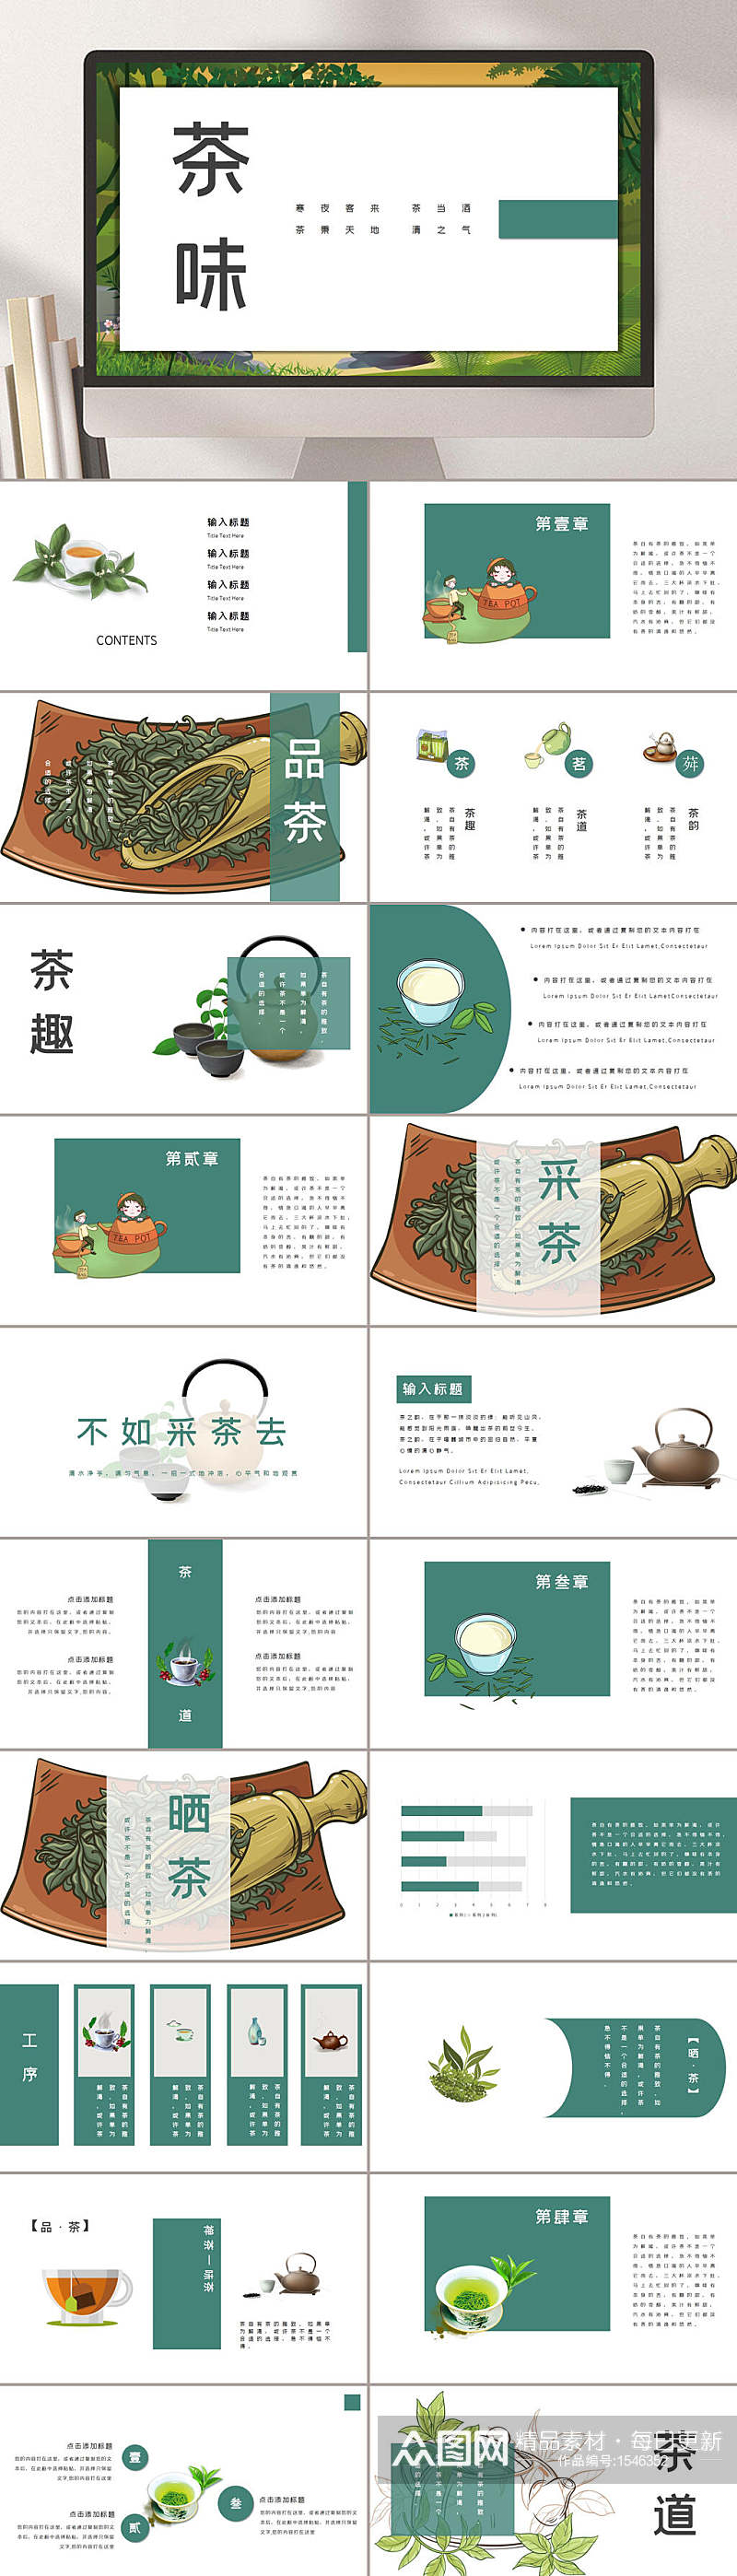 中国风茶项目介绍PPT模板素材